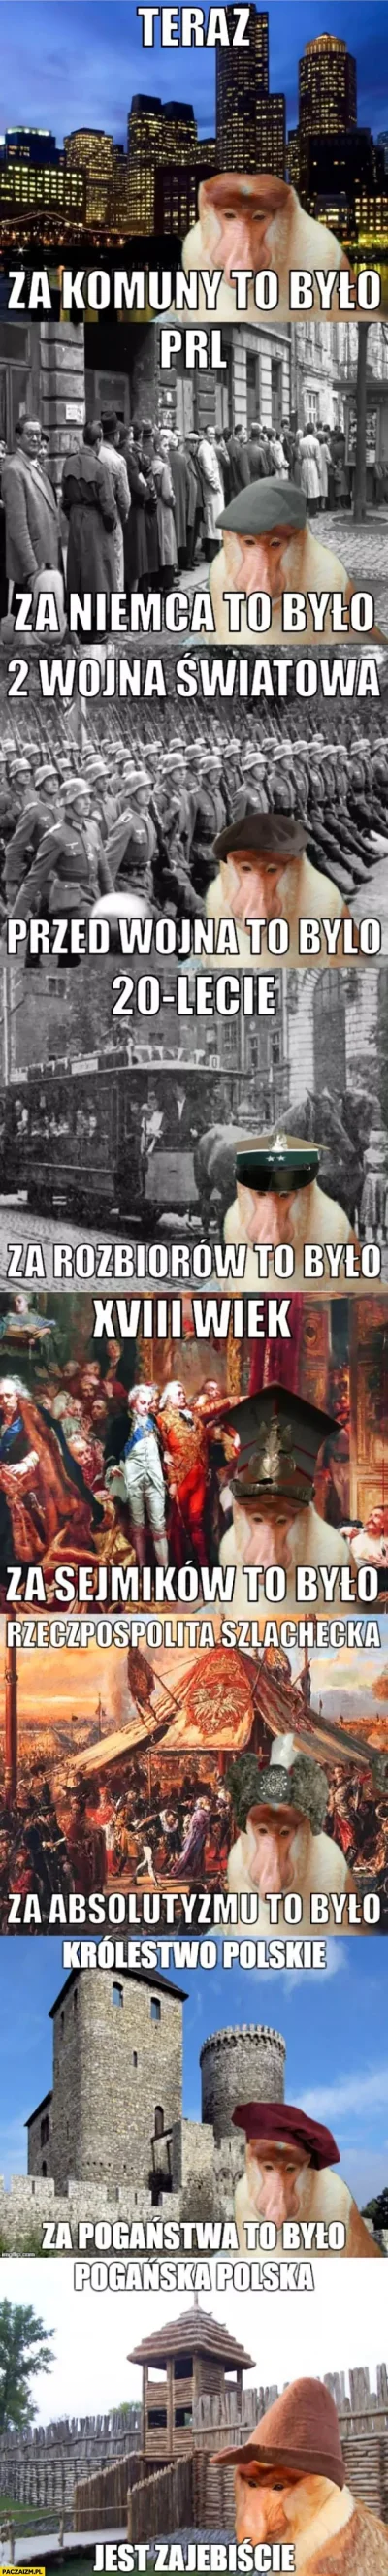 GienekMiecio - Kiedyś to było.
#polska #memy #gownowpis #bekazpodludzi #polak #janus...